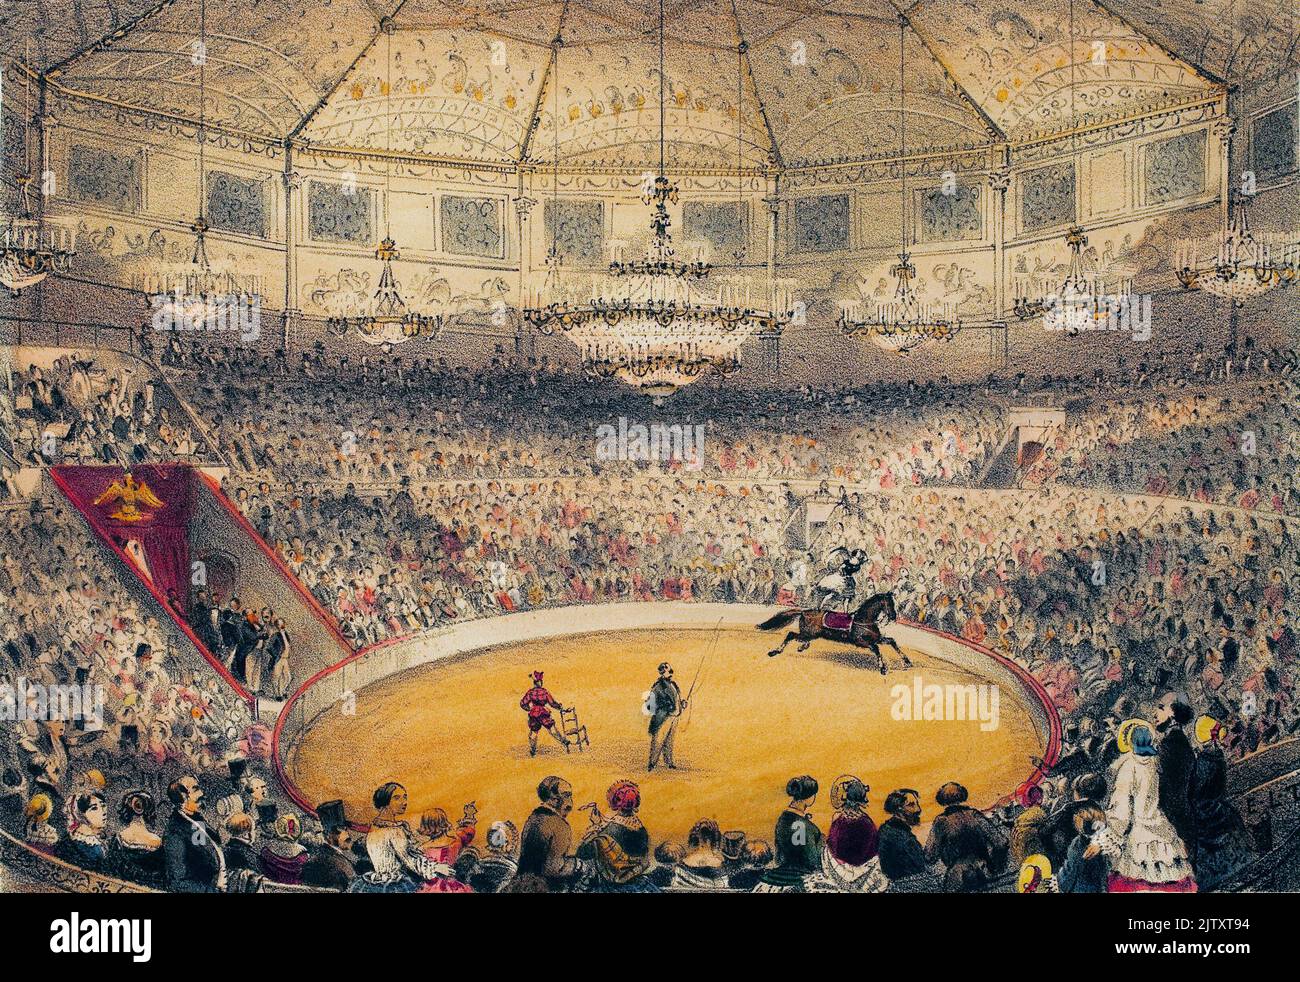 Cirque Napoléon (actuel cirque d'hiver, rue Amelot, Paris). Lithographie aquarellee, illustration de la Tramblais, dans "Album, souvenirs de Paris", Paris, 1885. Banque D'Images